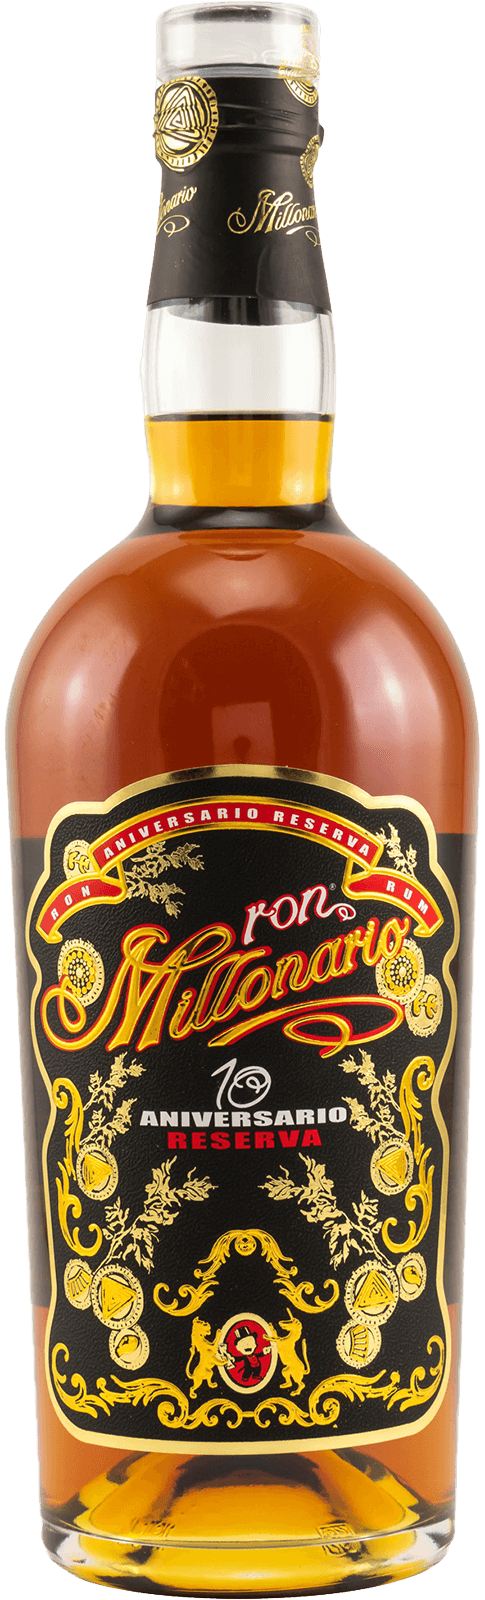 Ron Millonario 10 Aniversario Reserva Rum 40%